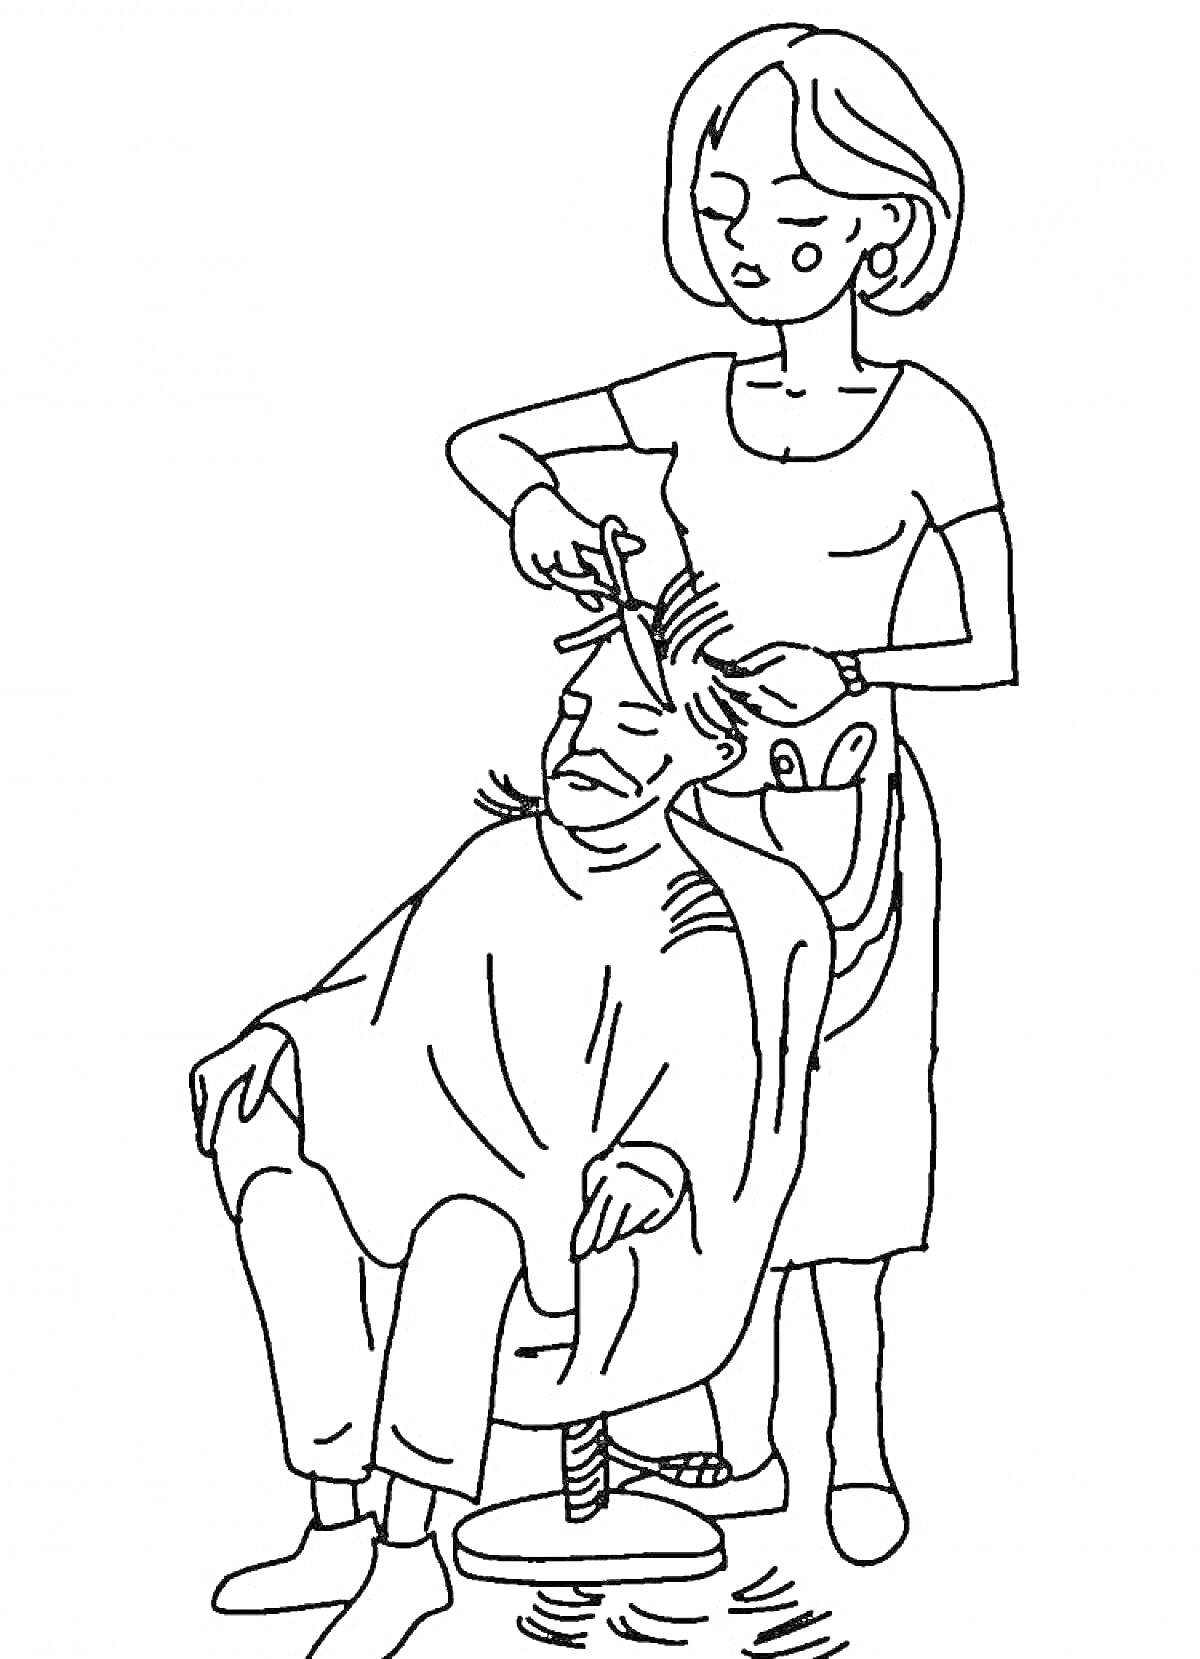 Раскраска Мужчина в парикмахерском кресле с парикмахером